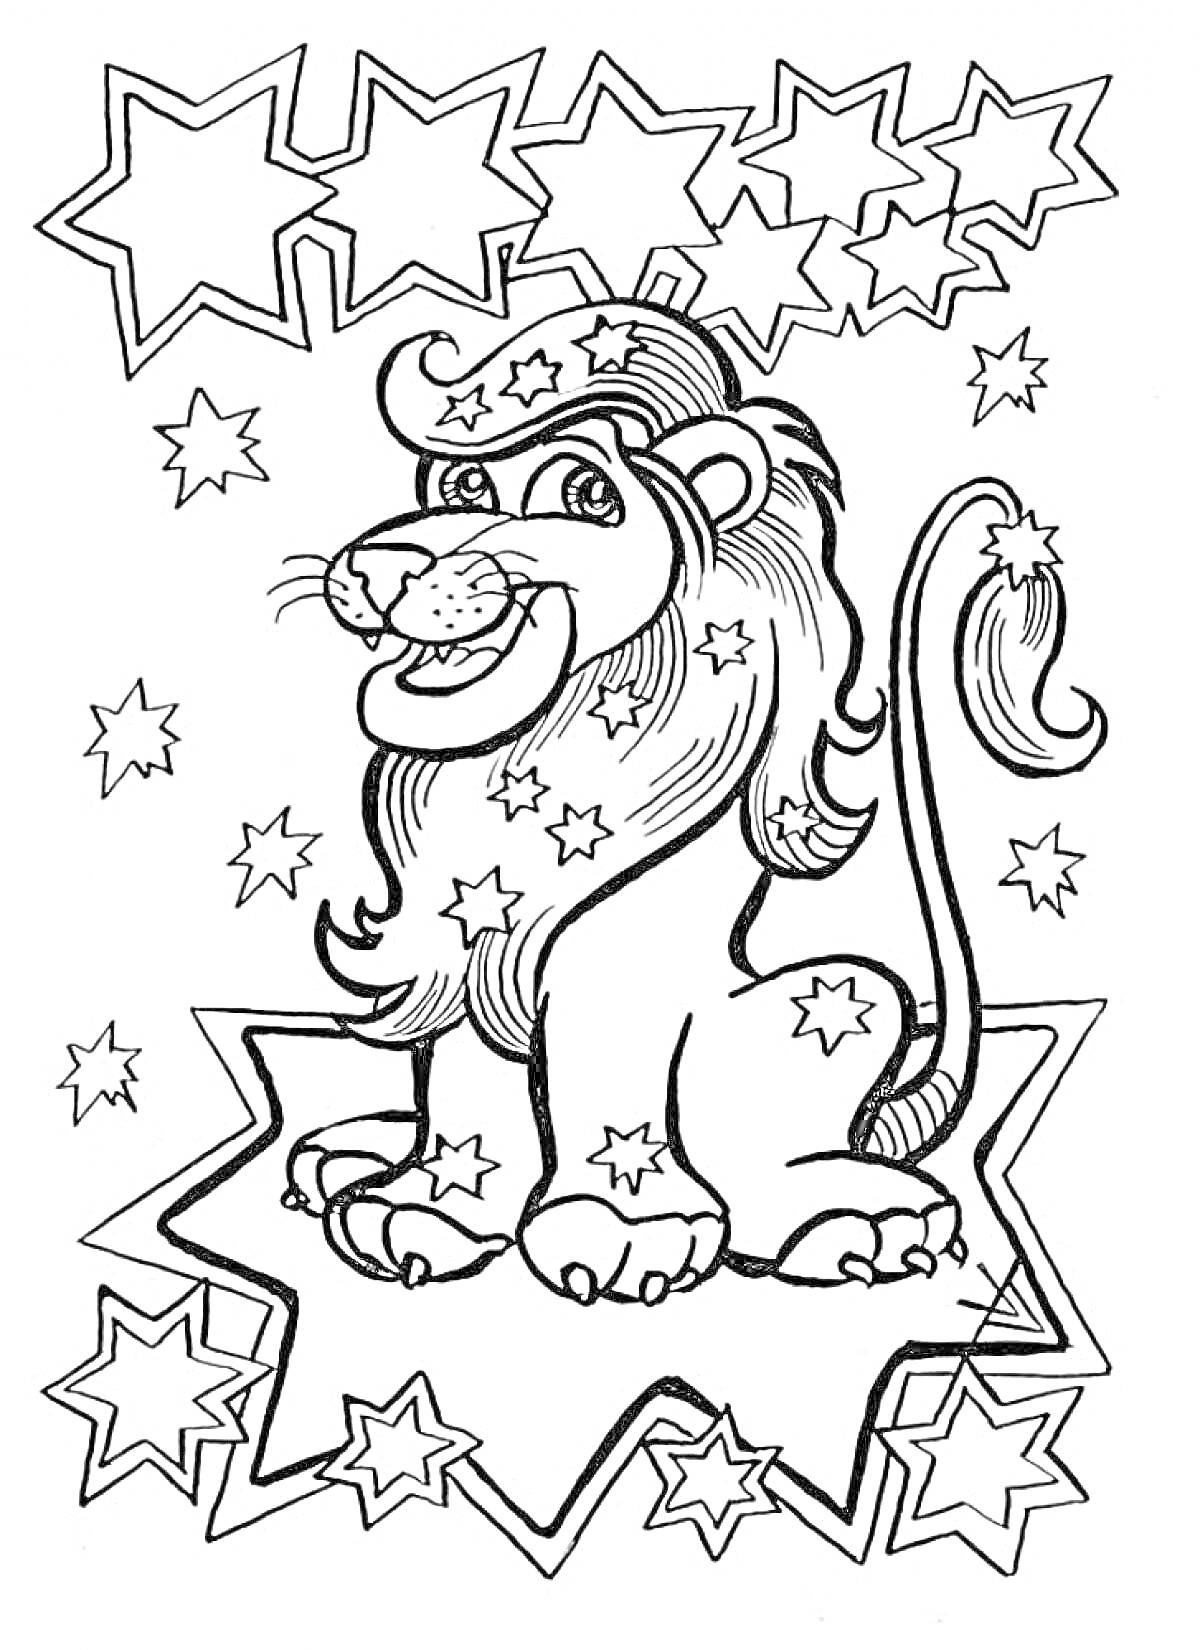 Раскраска Лев со звездами - лев, украшенный звездами, сидит в центре, окружен звездами различных размеров